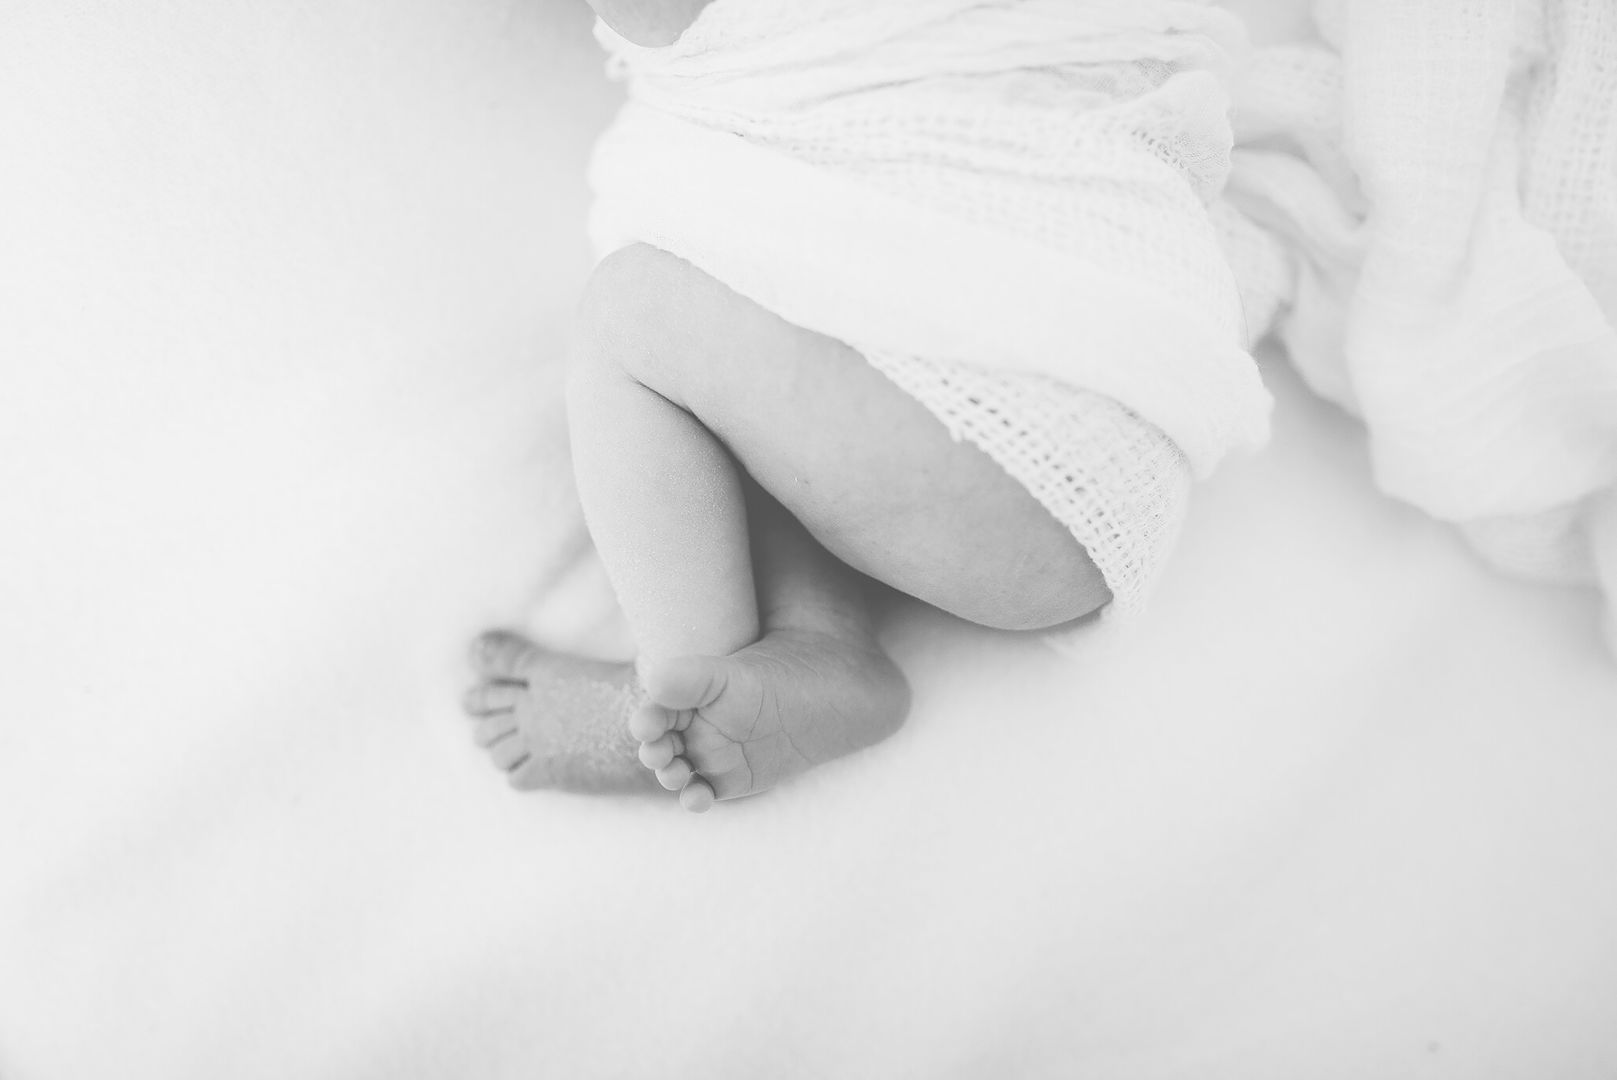 Novorodenecká fotografia